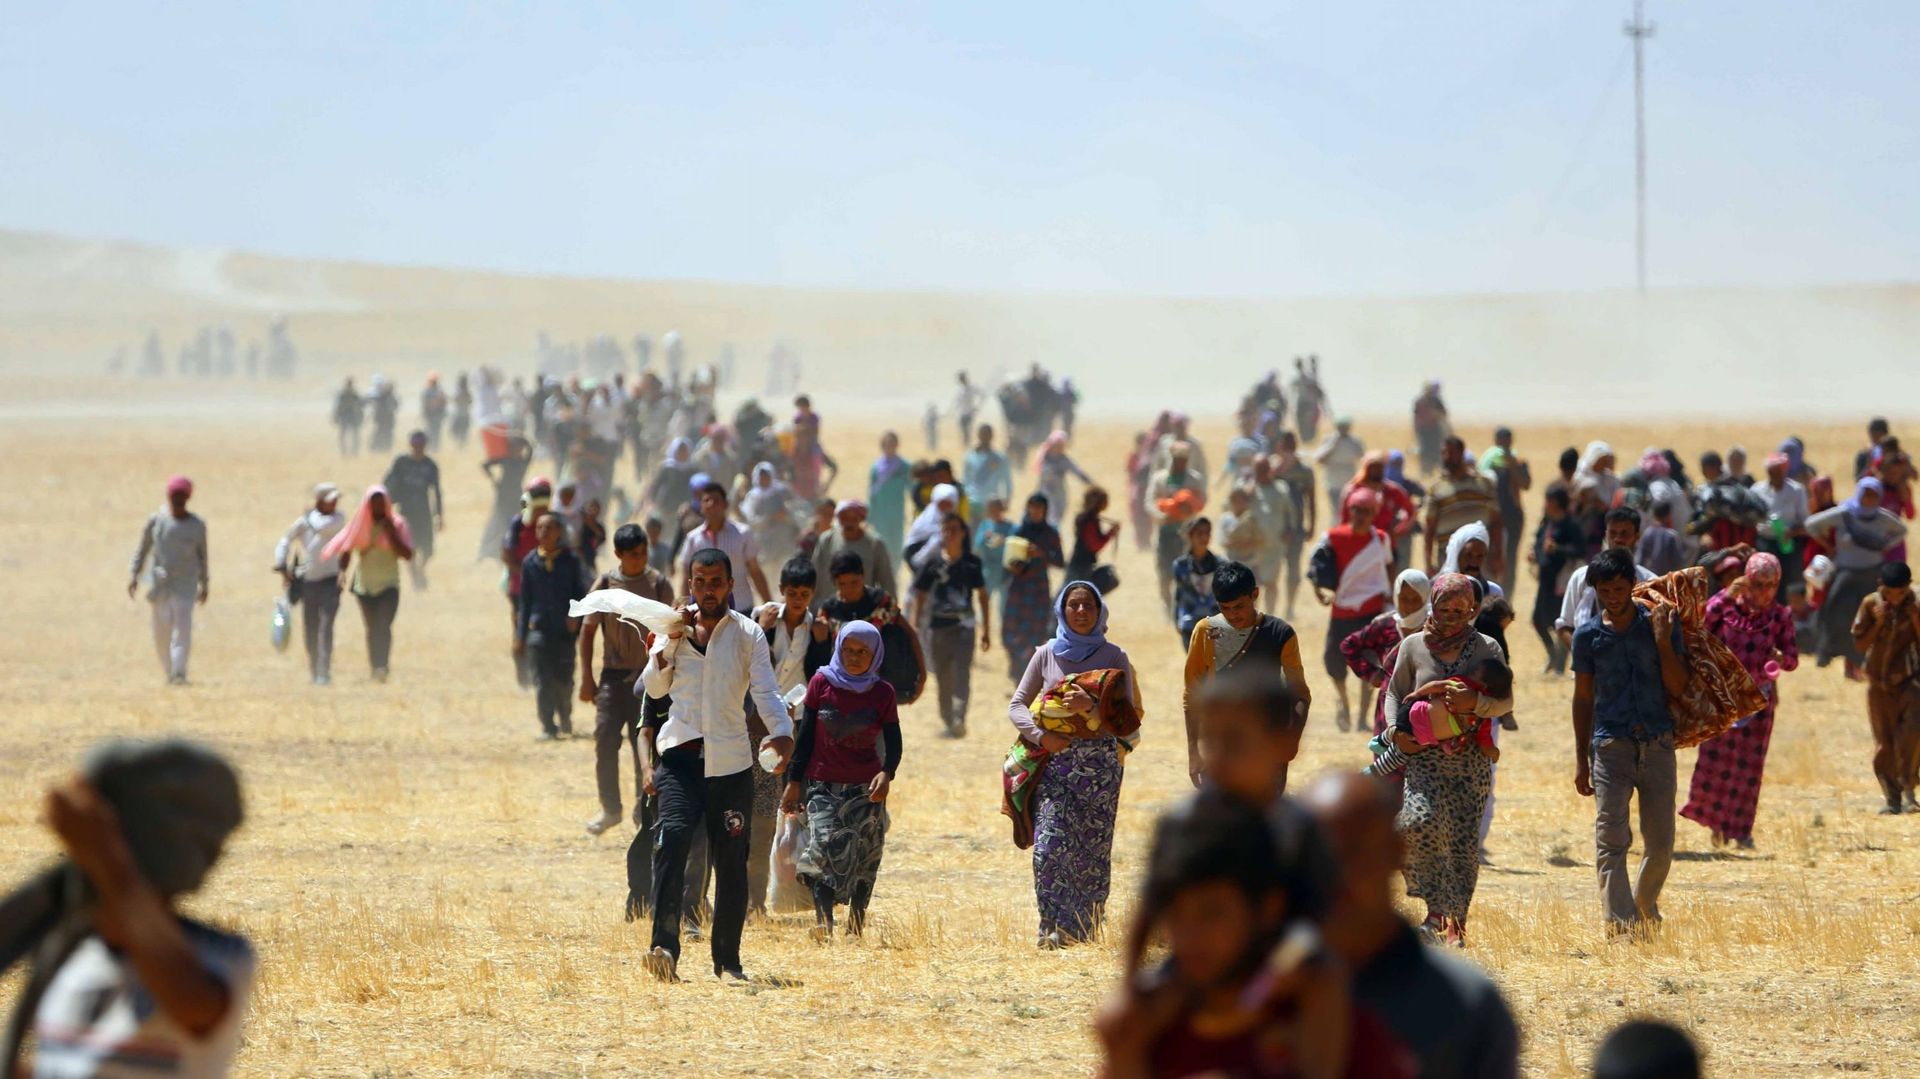 Des milliers de Yézidis piégés dans les montagnes de Sinjar alors qu'ils tentaient d'échapper aux forces de l'État islamique (EI), sont secourus par les forces peshmerga kurdes et l'unité de protection du peuple (YPG) à Mossoul, en Irak, le 09 août 2014.